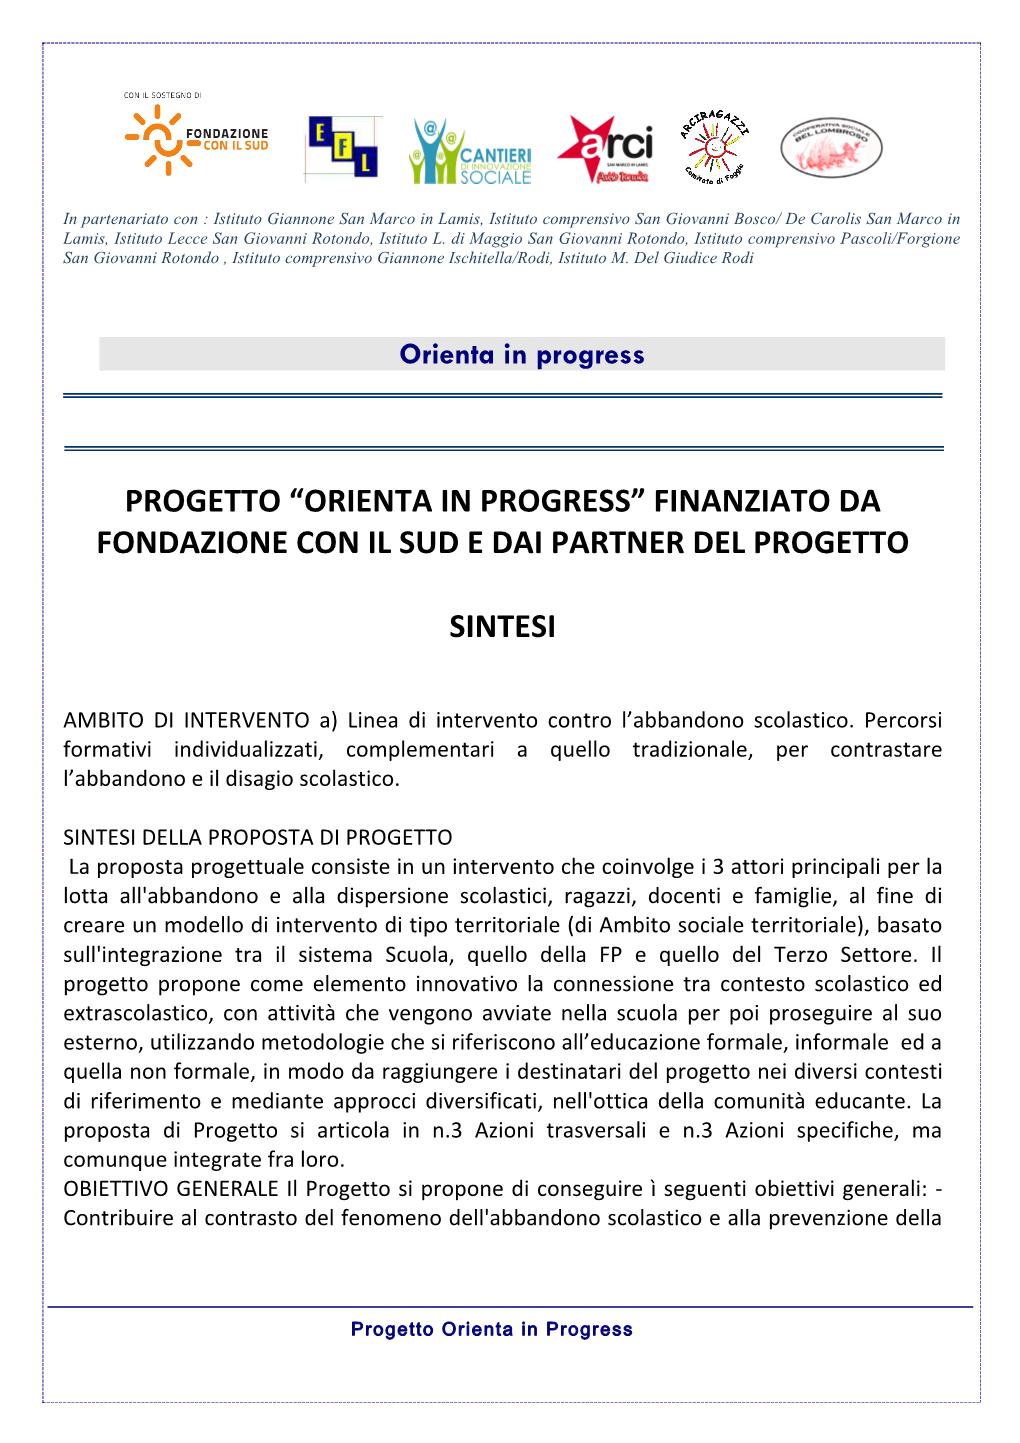 Progetto “Orienta in Progress” Finanziato Da Fondazione Con Il Sud E Dai Partner Del Progetto